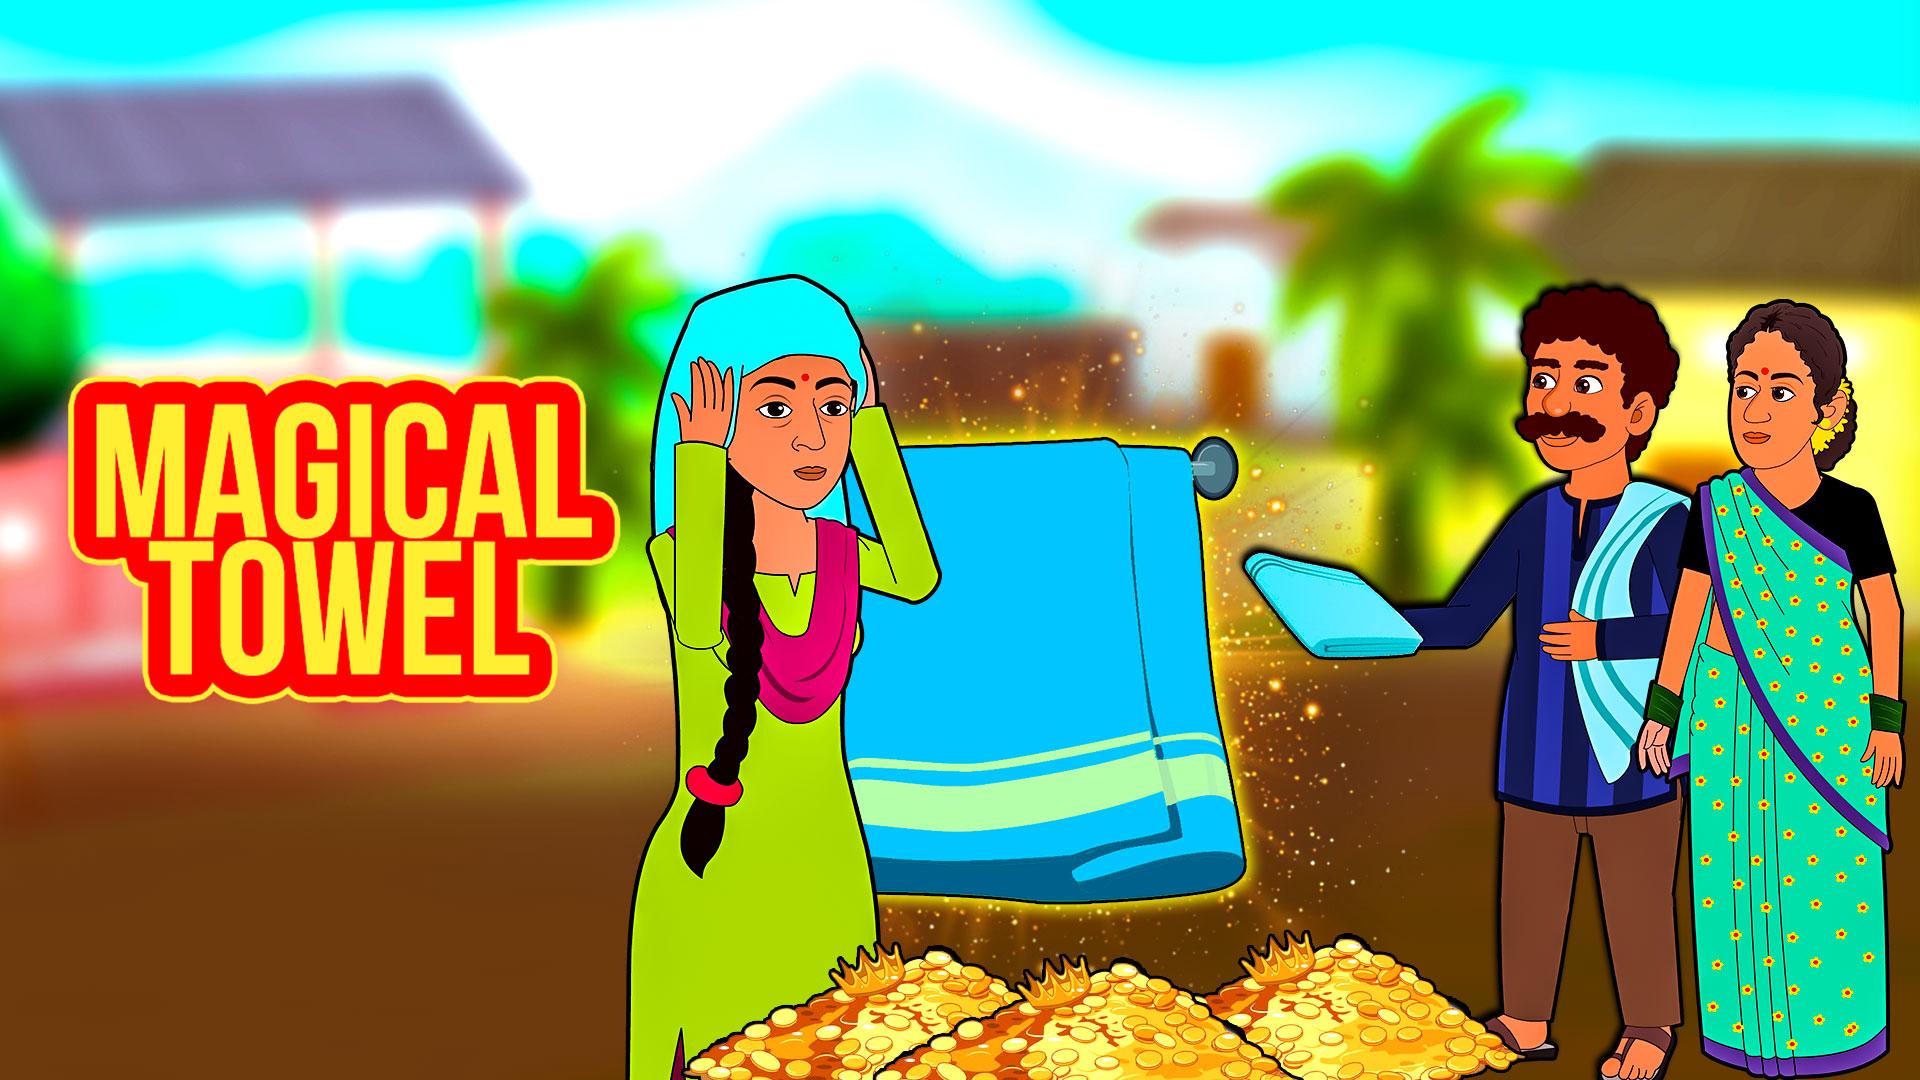 Watch The Magical Towel Telugu Kids Movie Online in 2021